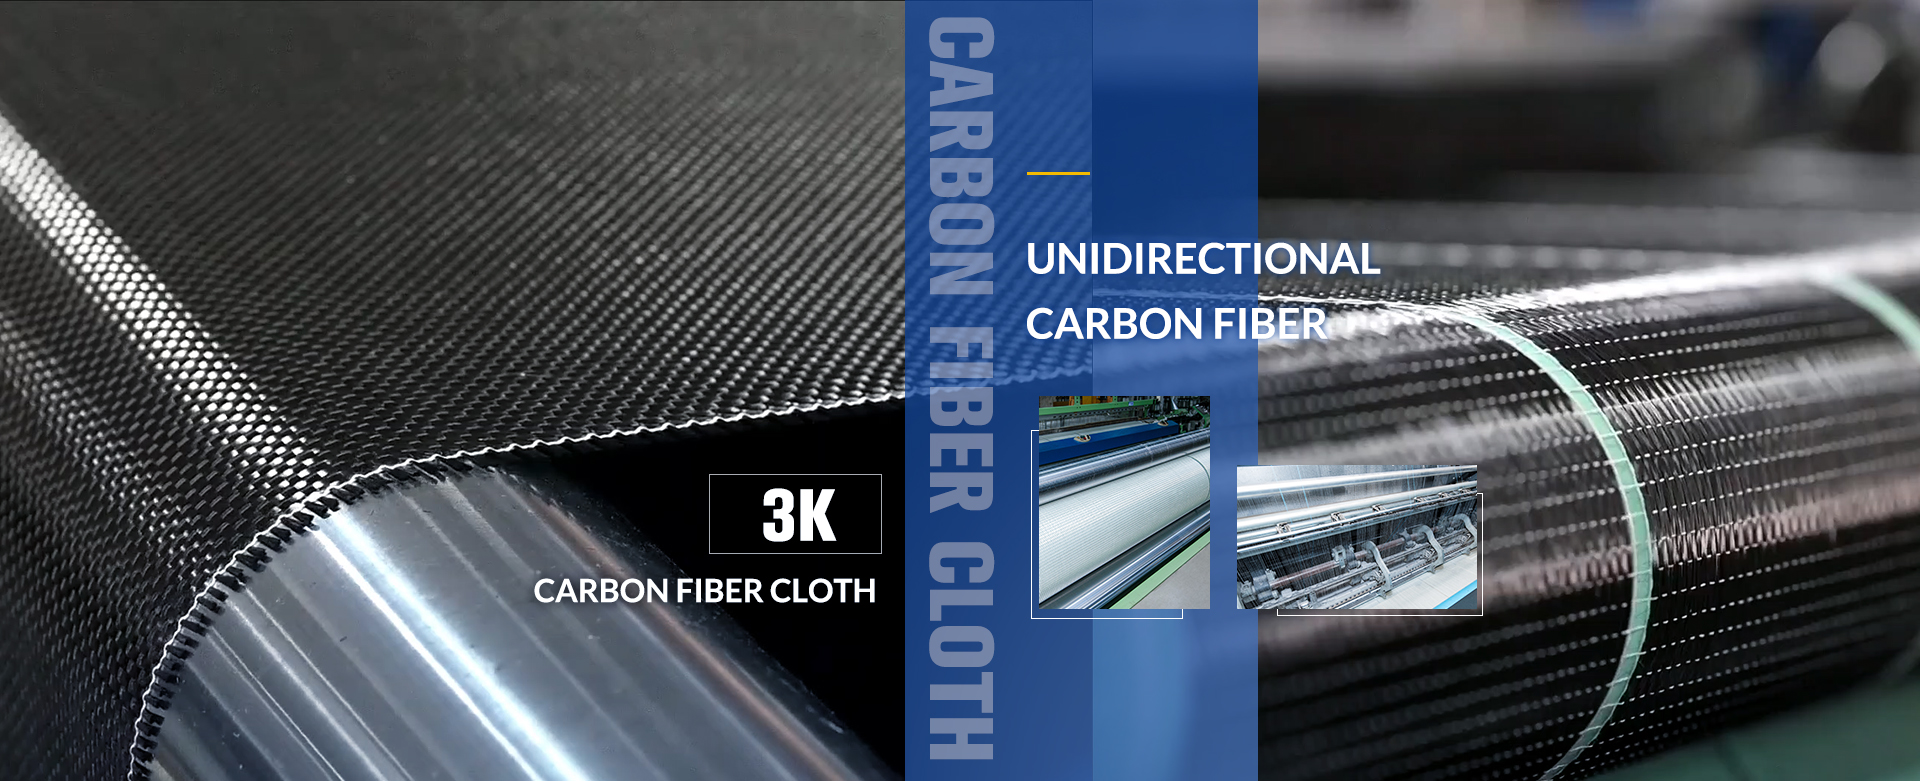 Carbon Fiber Fabric Cloth, Carbon Fiber Vinyl Fabric, Carbon Fiber Woven Fabric - Protech